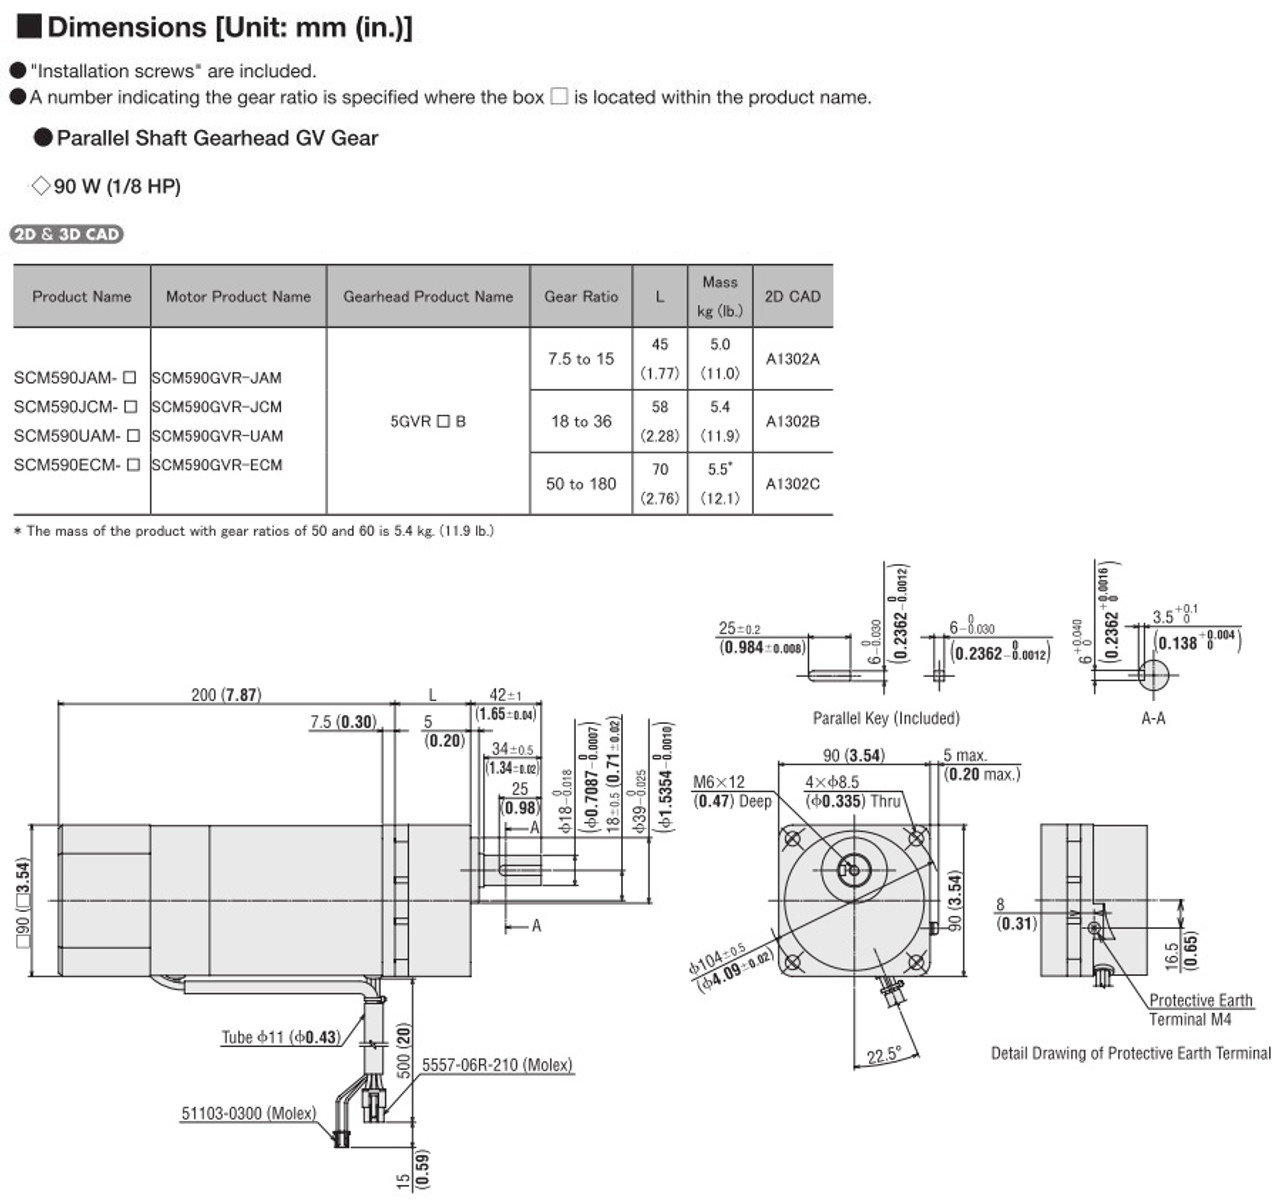 SCM590ECM-15 - Dimensions